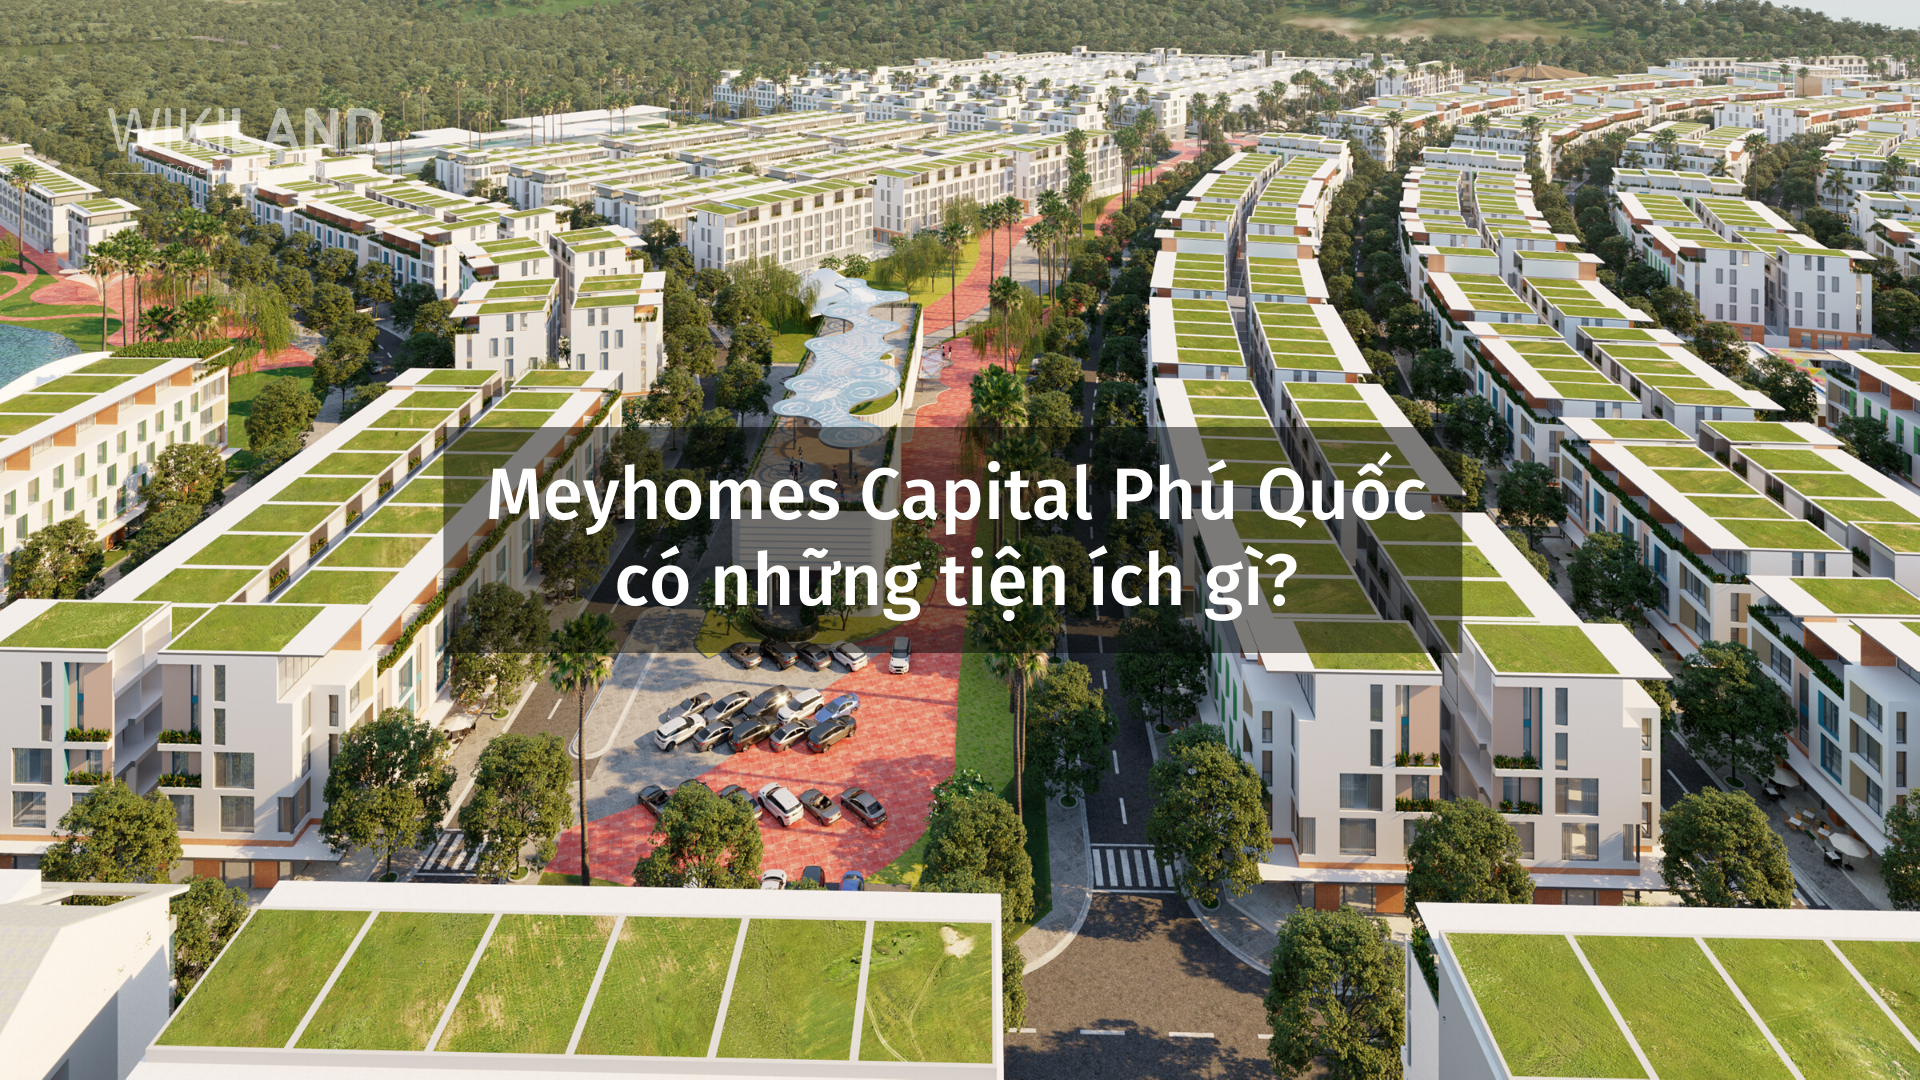 Meyhomes Capital Phú Quốc có những tiện ích gì?